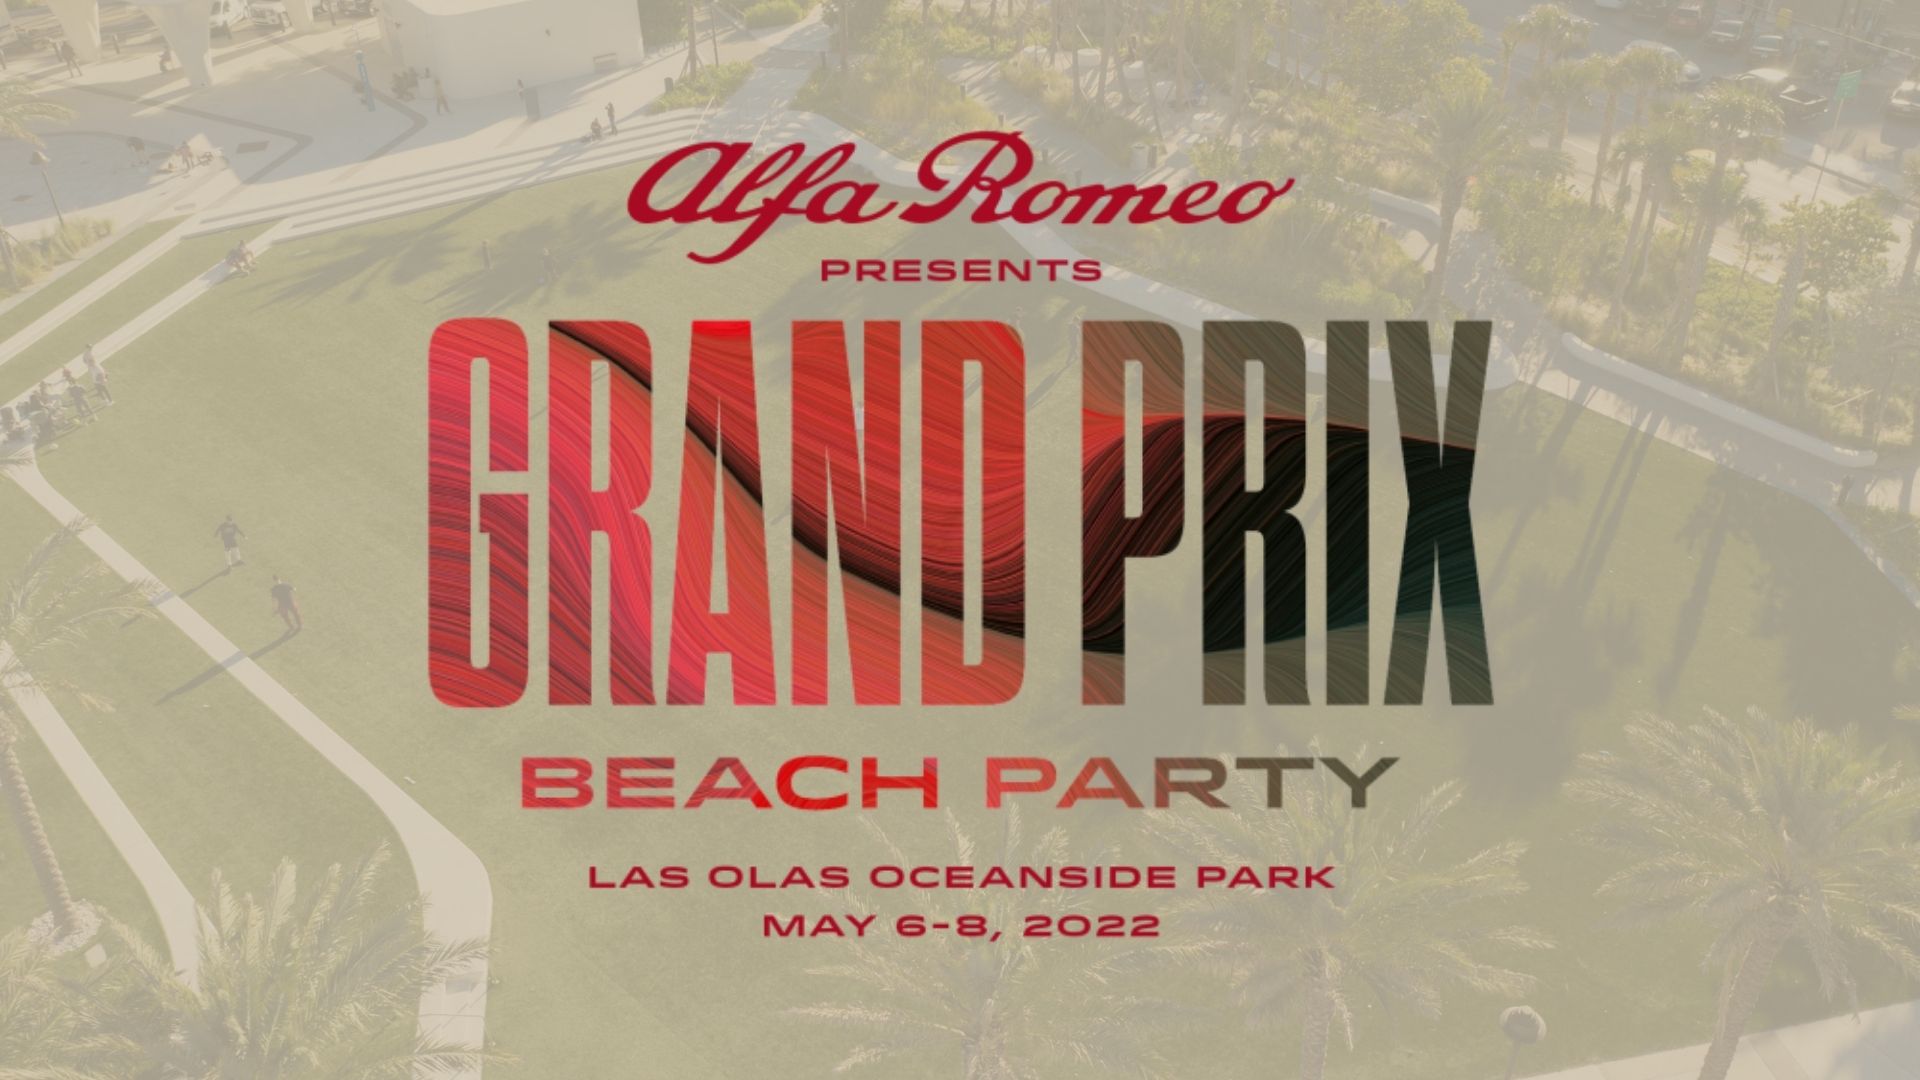 alfa romeo grand prix beach party